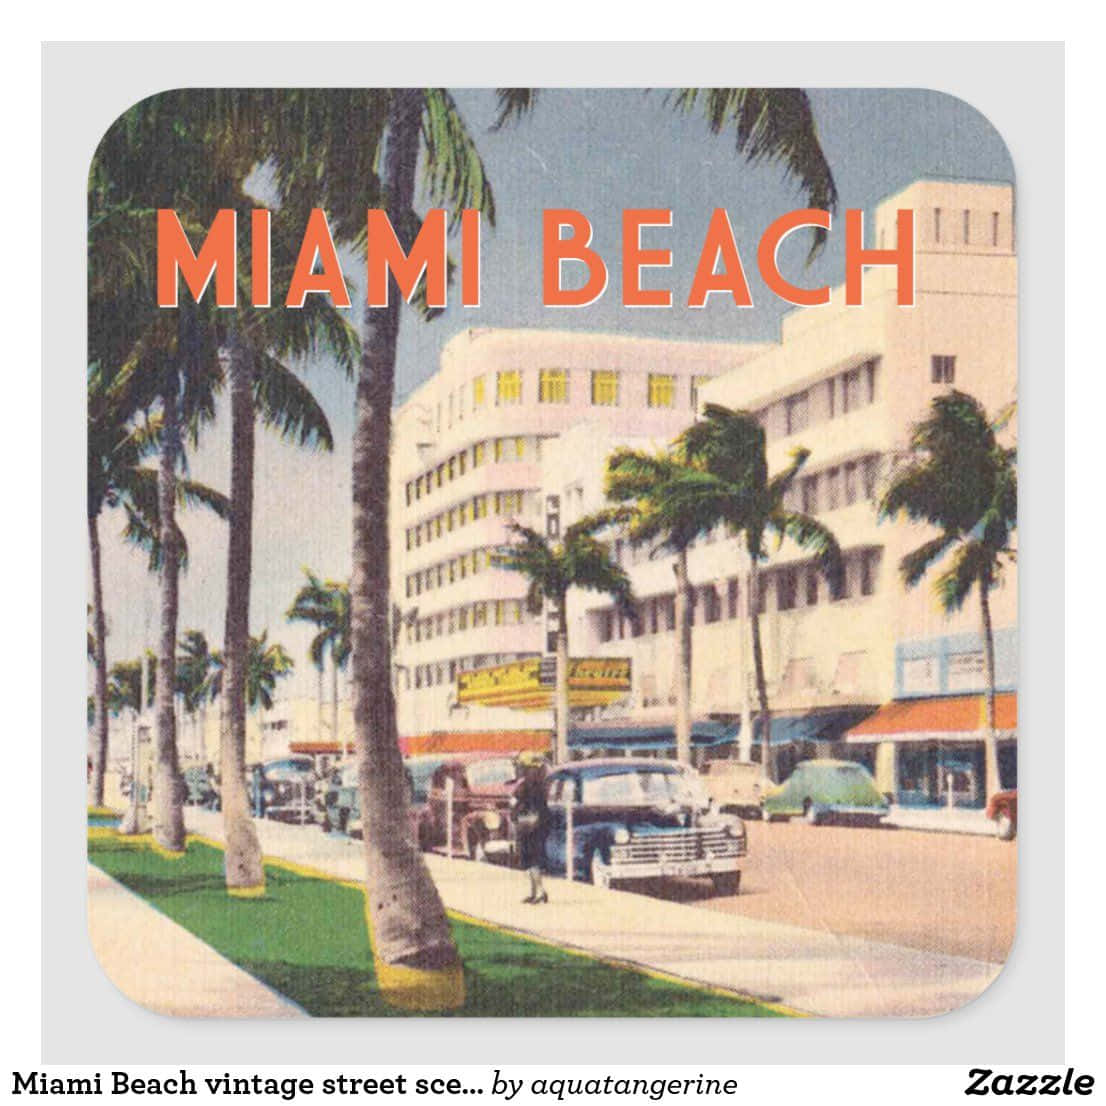 Oplev nostalgi af Miami i dets retro-dage. Wallpaper